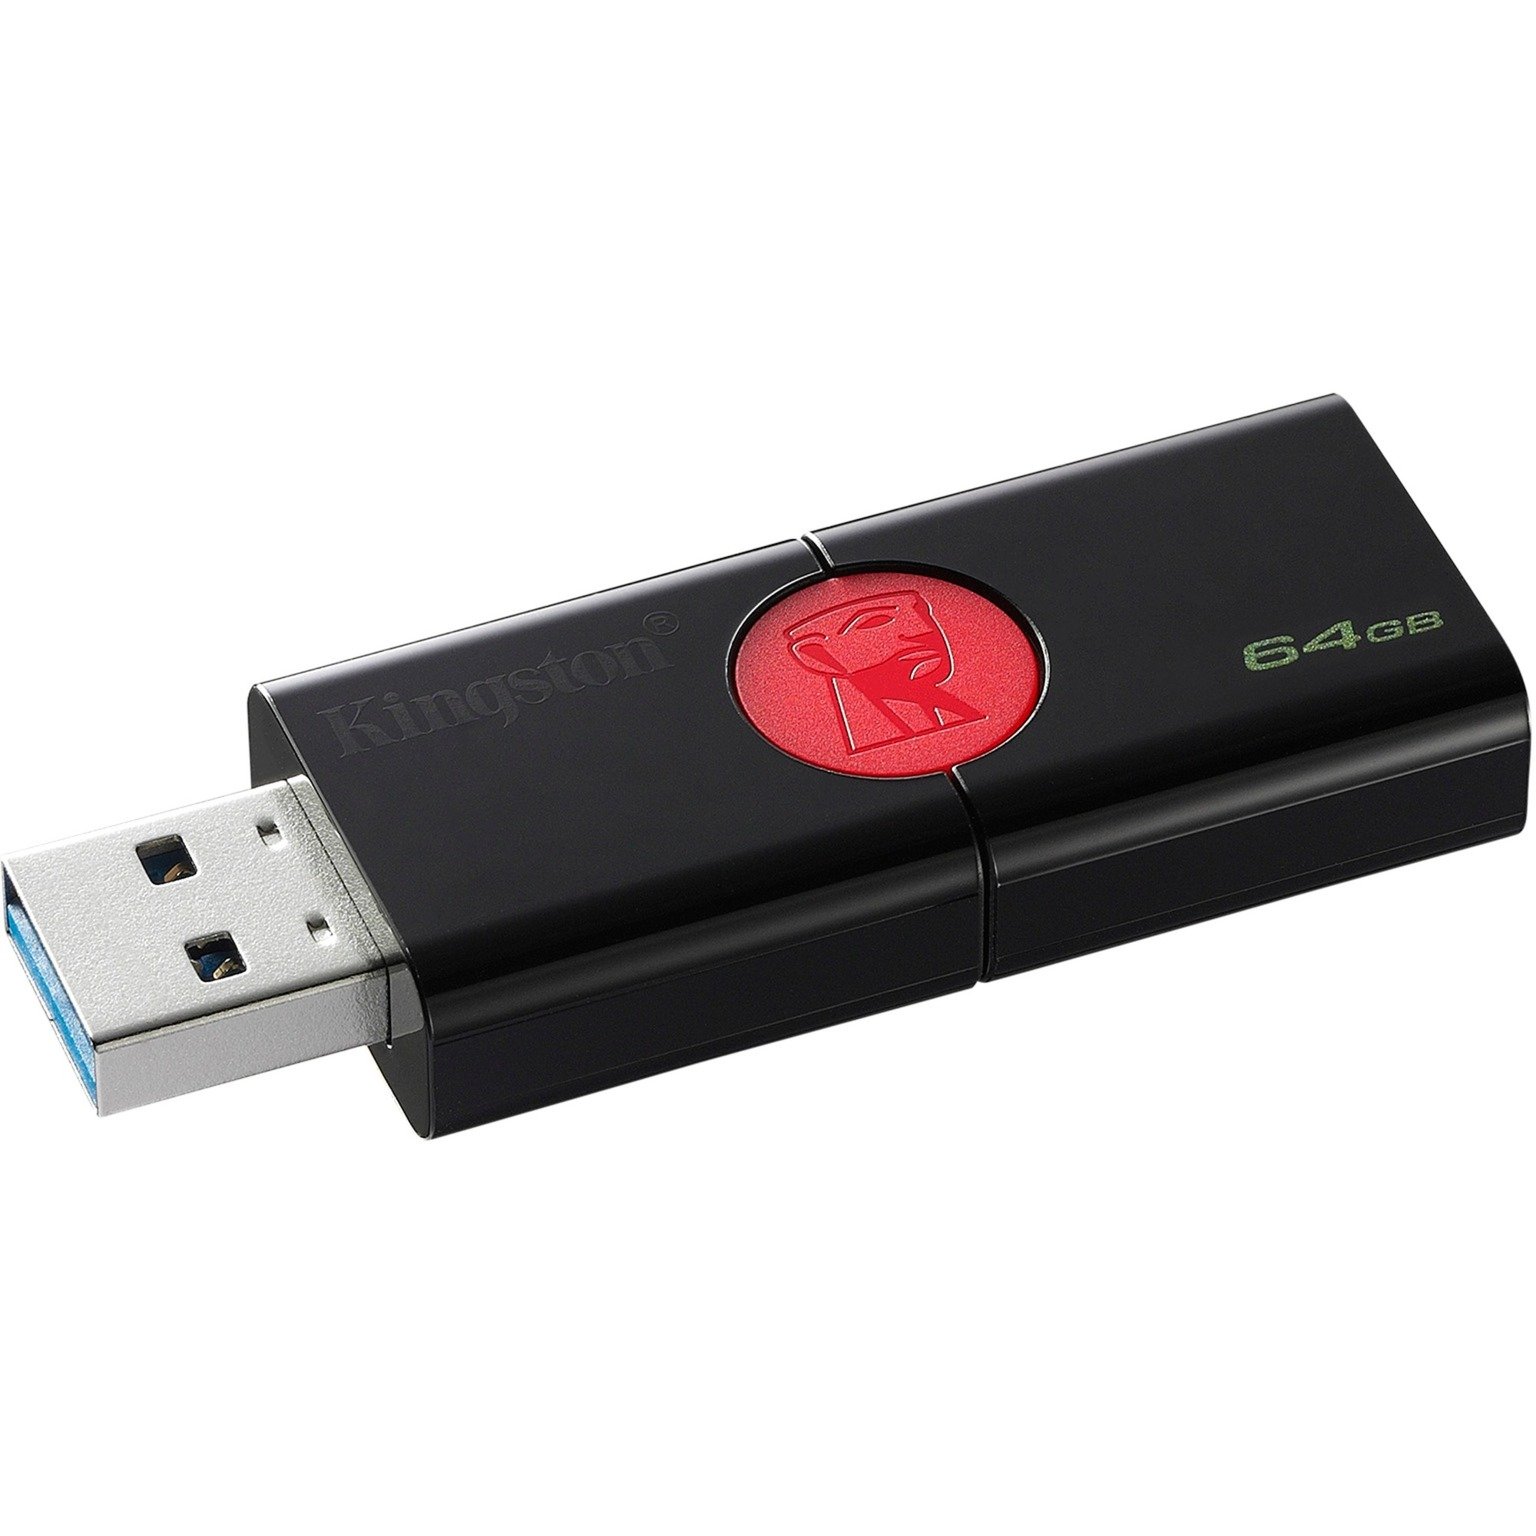 DataTraveler 106 pami?? USB 64 GB 3.0 (3.1 Gen 1) Z??cze USB typu A Czarny, Czerwony, No?nik Pendrive USB